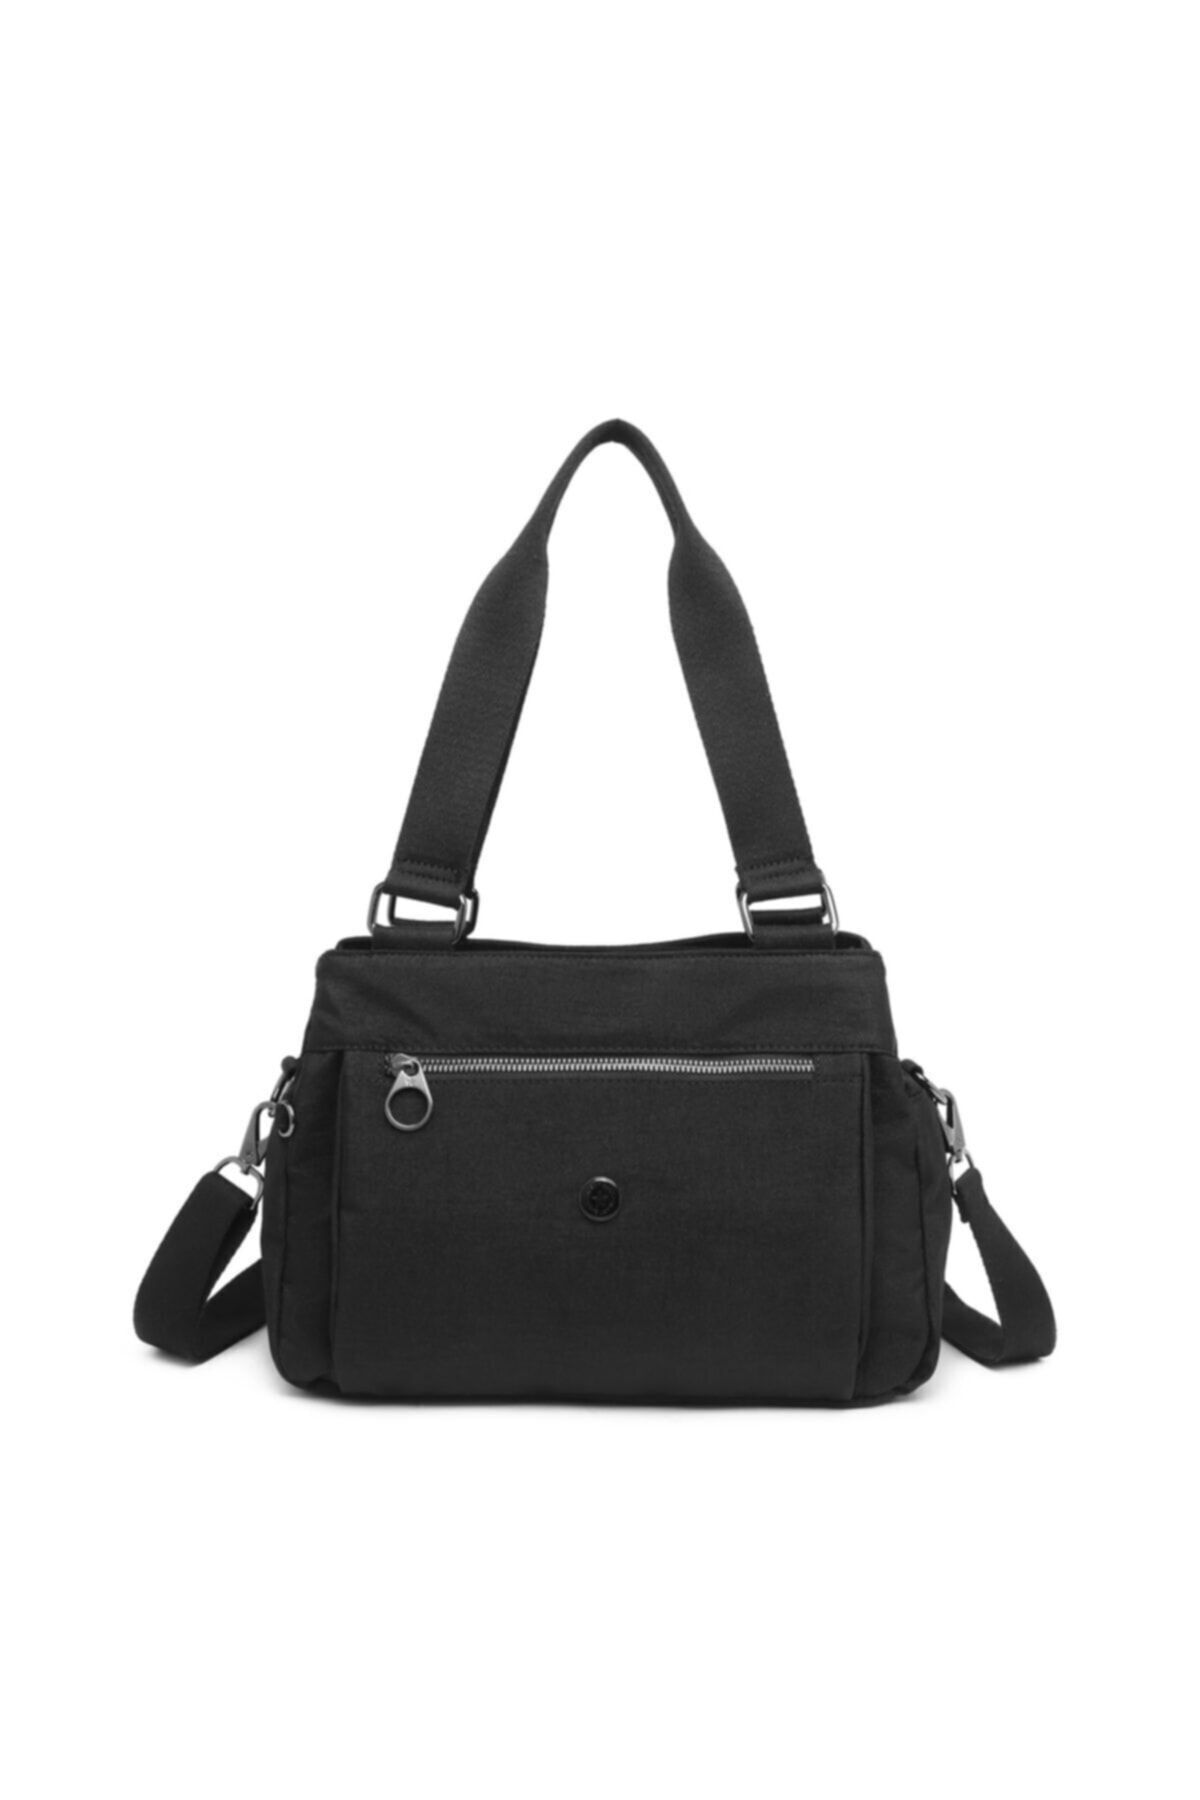 Smart Bags Smart Bag Kadın Siyah Renk Nano Metalik Kumaş Su Geçirmez Omuz Çantası 1125